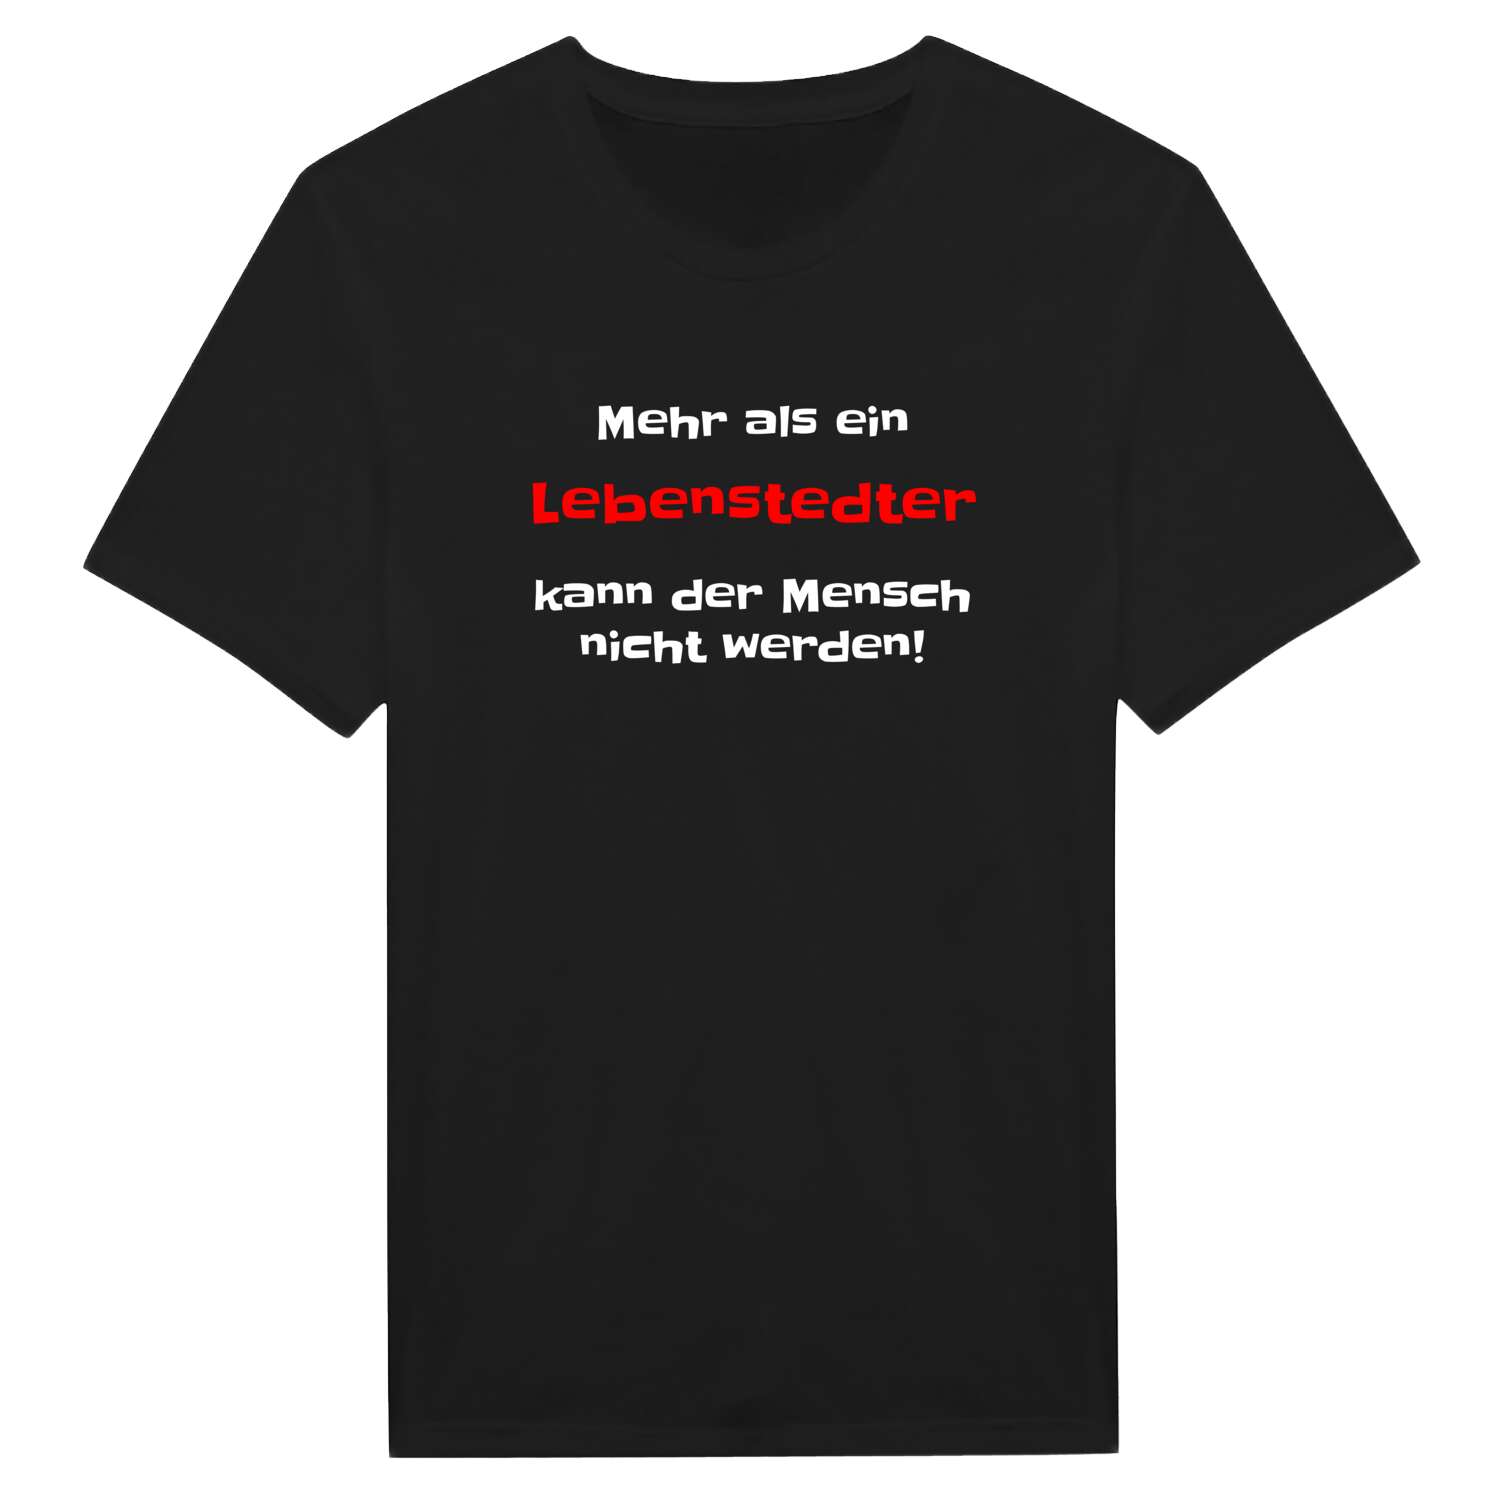 Lebenstedt T-Shirt »Mehr als ein«